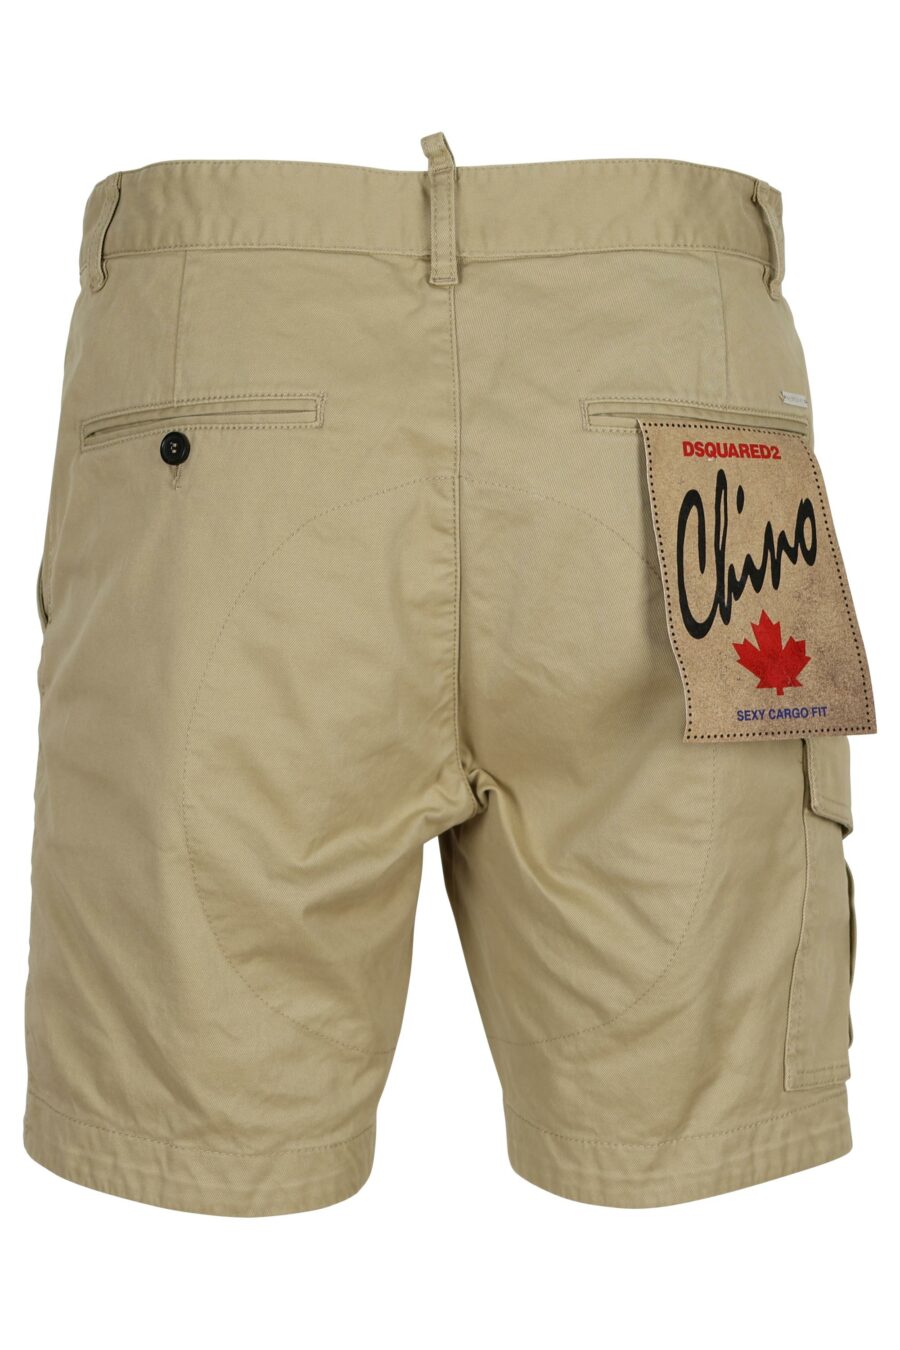 Pantalón corto beige "sexy cargo shorts" - 8052134622605 1